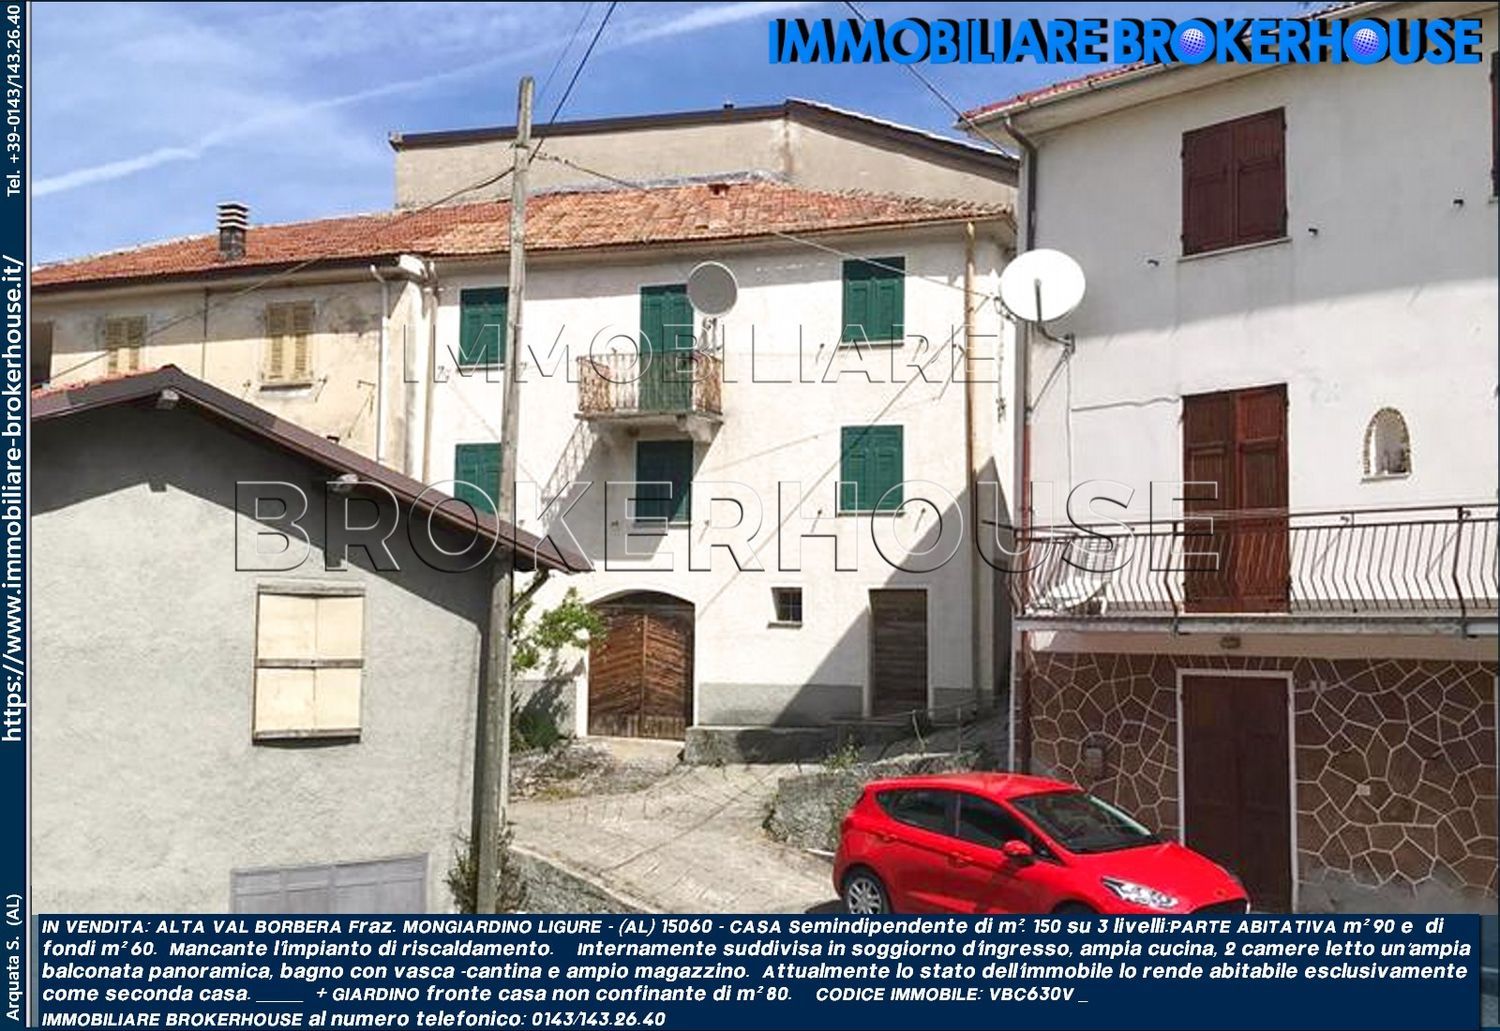 Soluzione Indipendente in vendita a Mongiardino Ligure, 3 locali, prezzo € 24.000 | CambioCasa.it